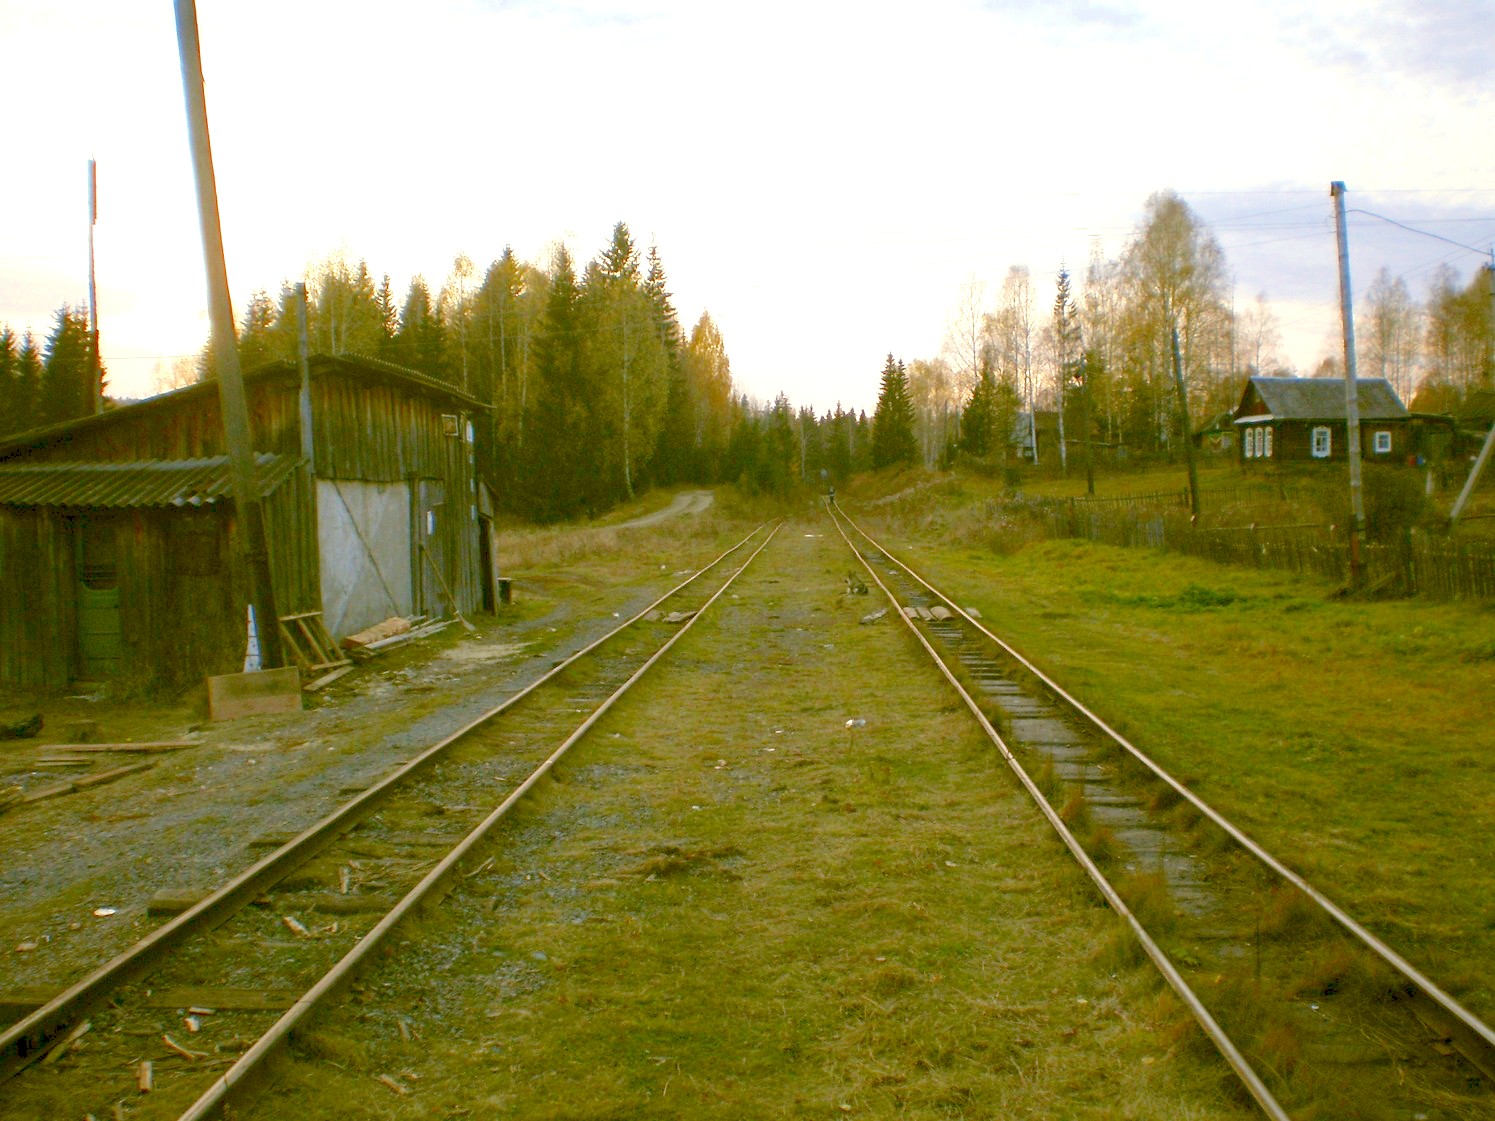 Висимо-Уткинская узкоколейная железная дорога  — фотографии, сделанные в 2007 году (часть 12)